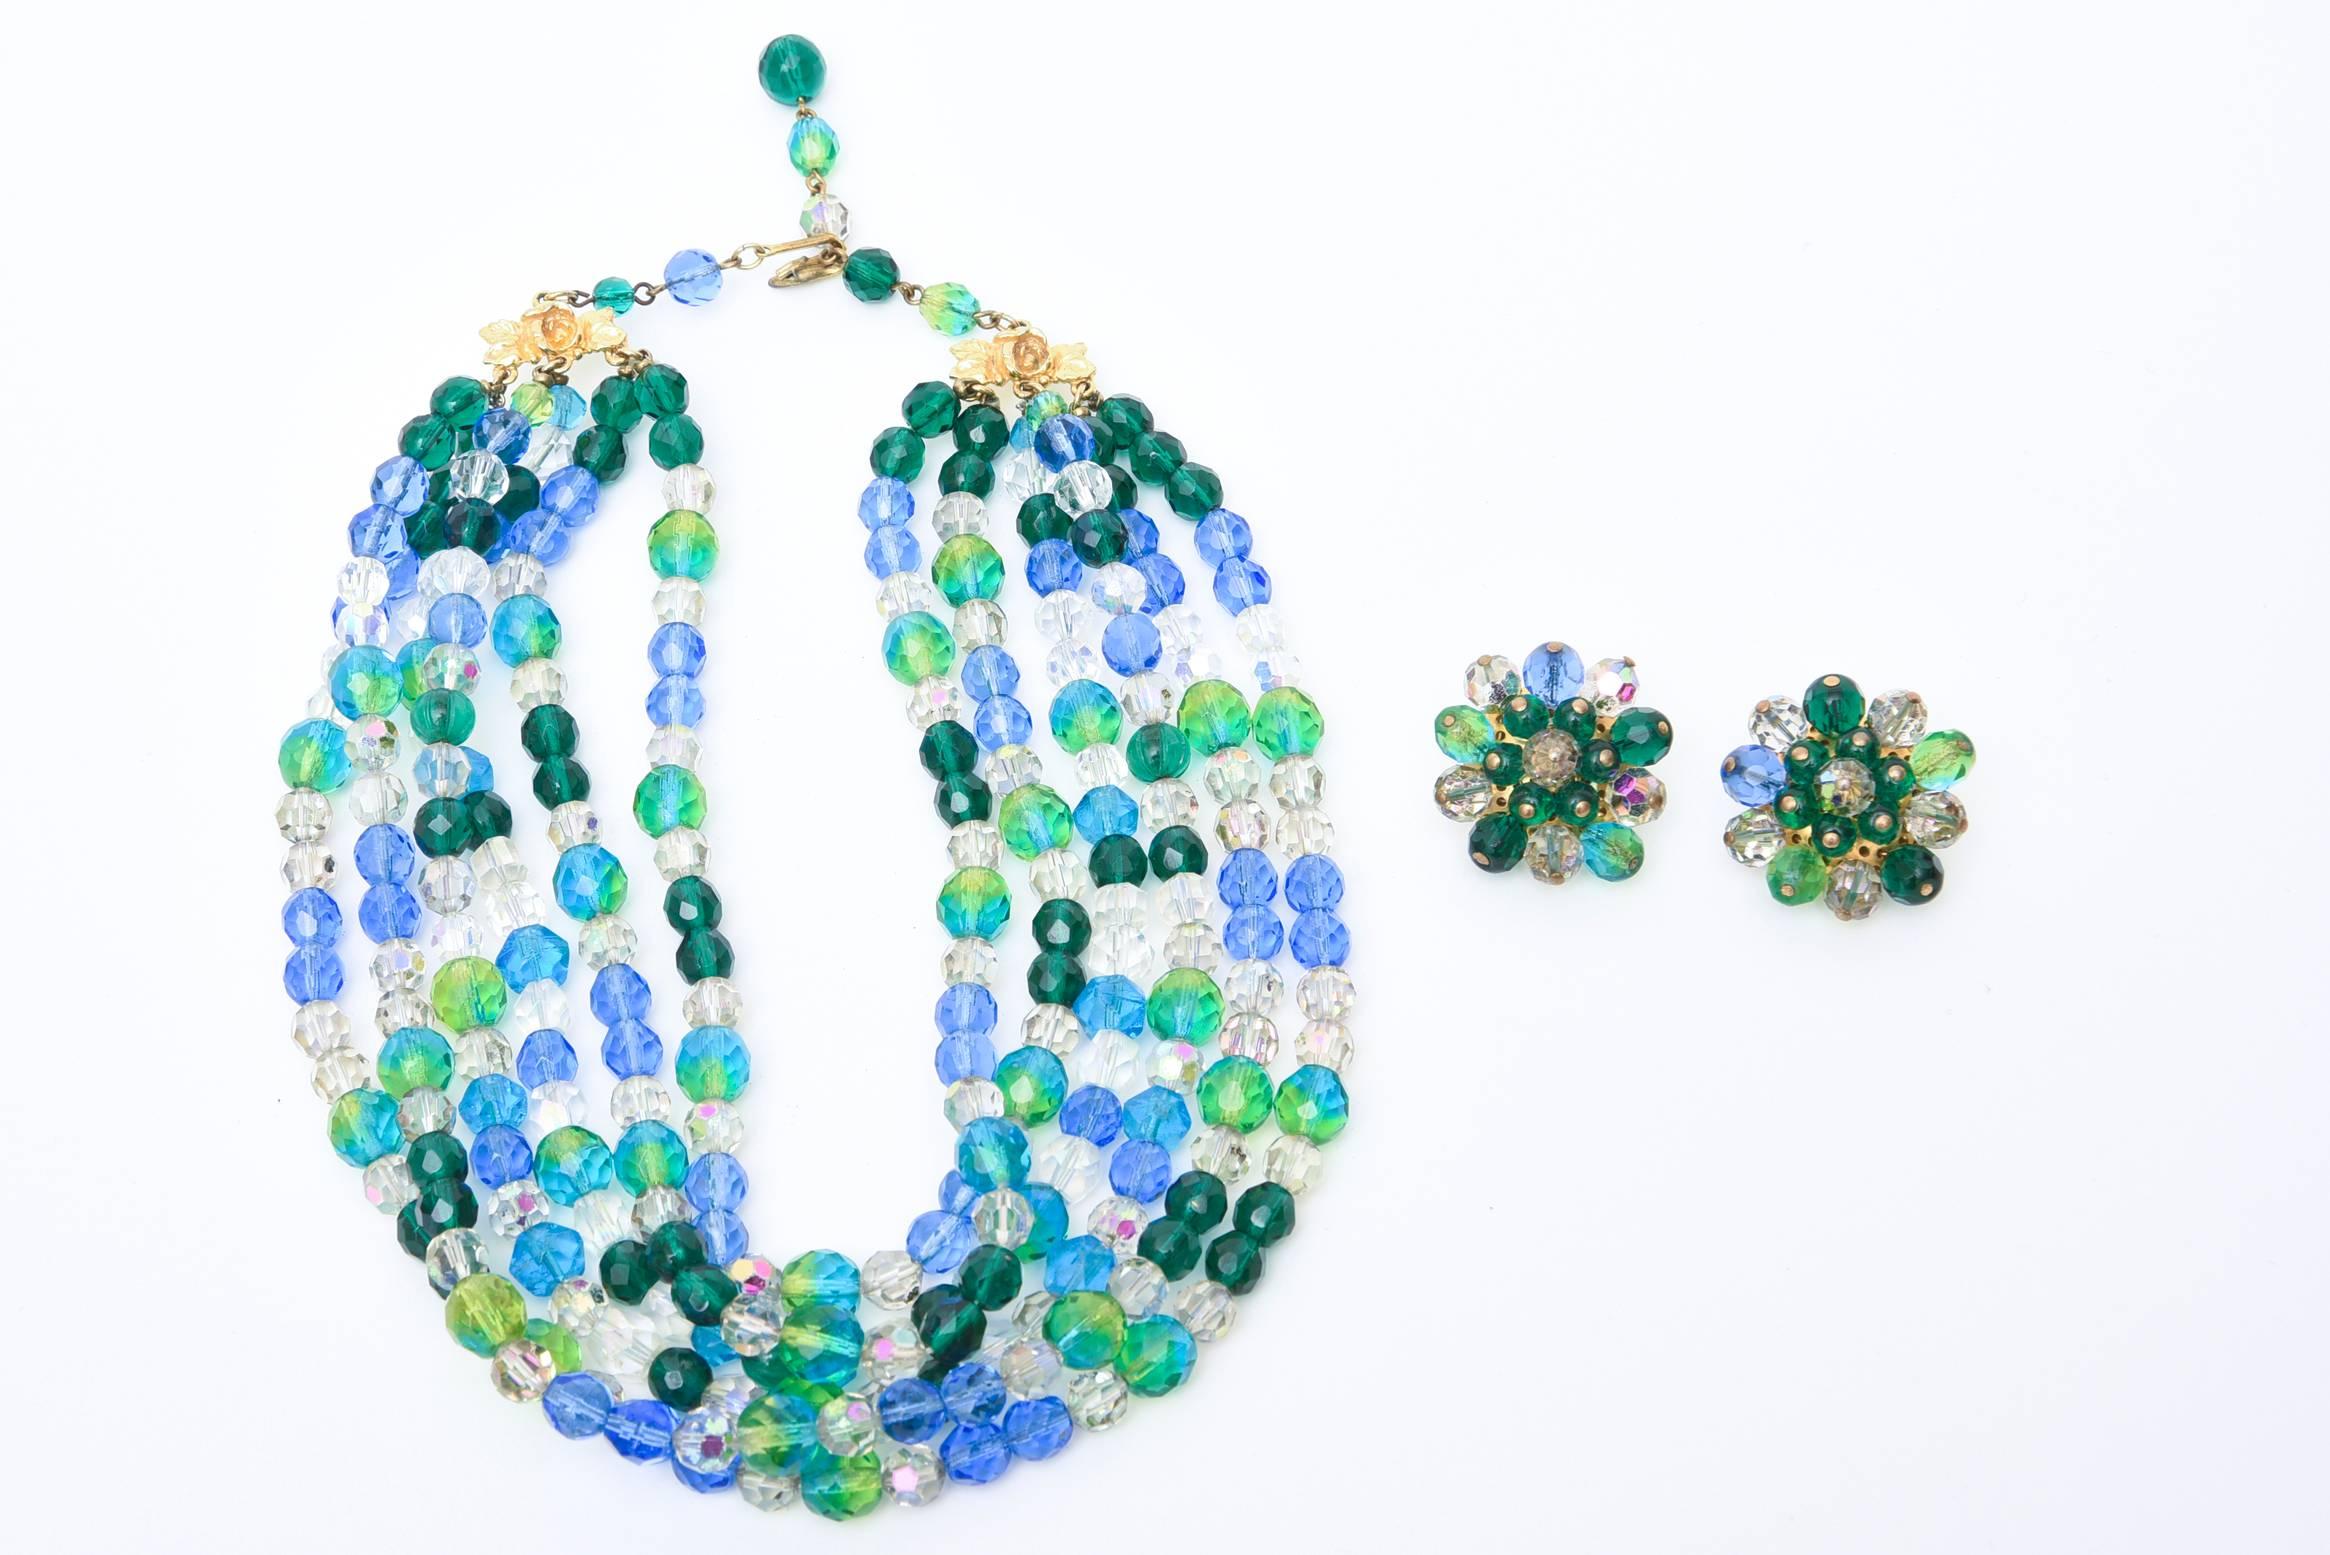 Die Farben des Meeres in abwechselnden blauen und grünen Glasperlen machen diese signierte Vintage-Halskette von Elsa Schiaparelli so tragbar. Es gibt 6 breite Stränge auf jeder Seite aus üppigen farbigen Glasperlen und passende